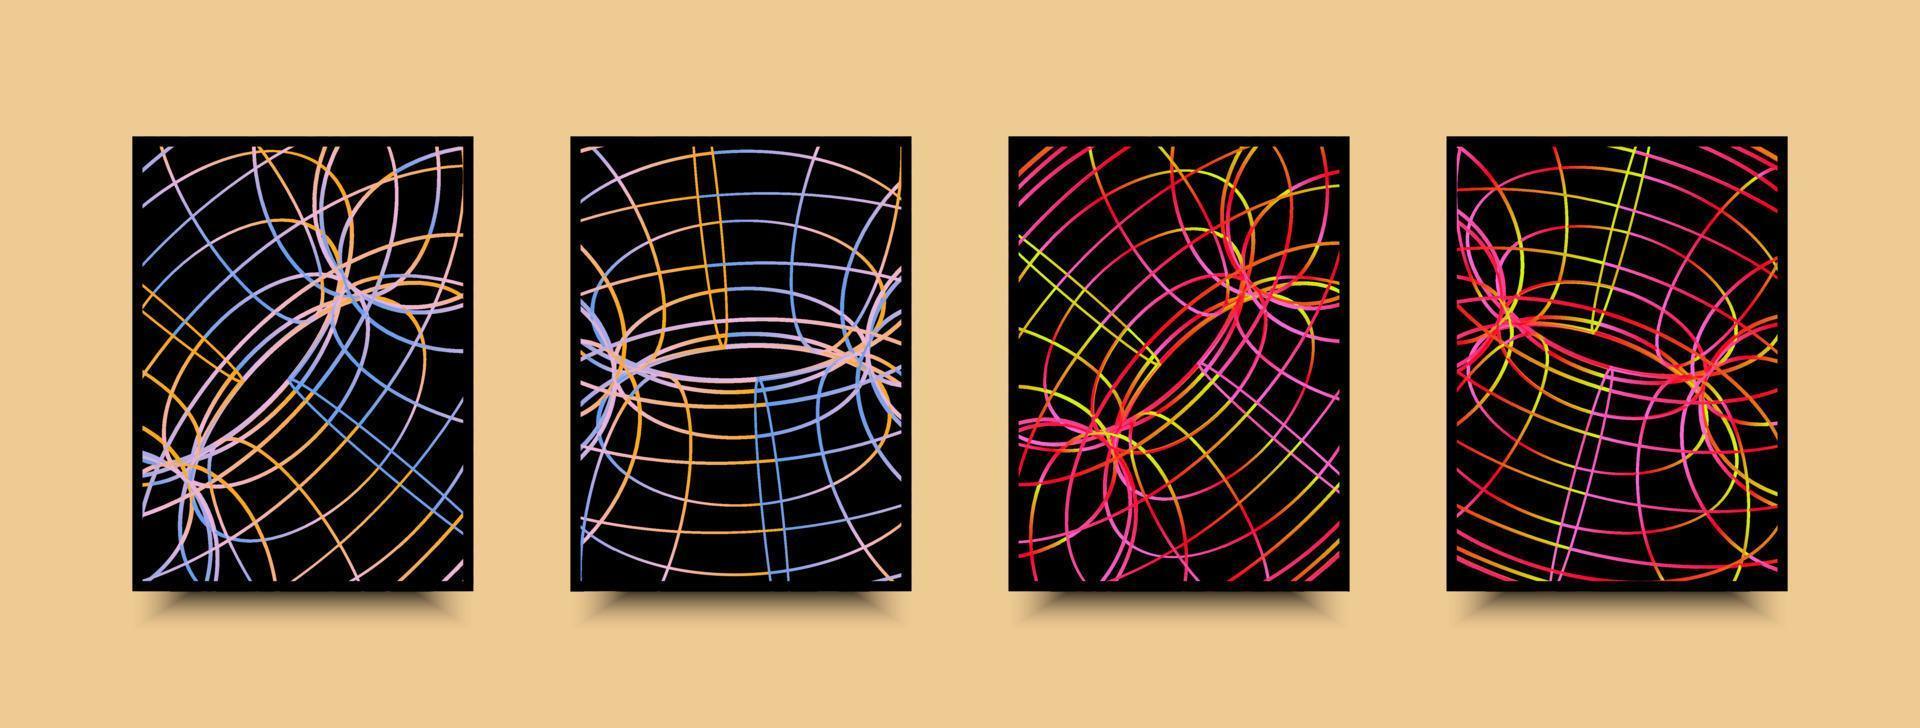 geometri rutnät perspektiv trådmodell affisch i neon lutning färger vektor